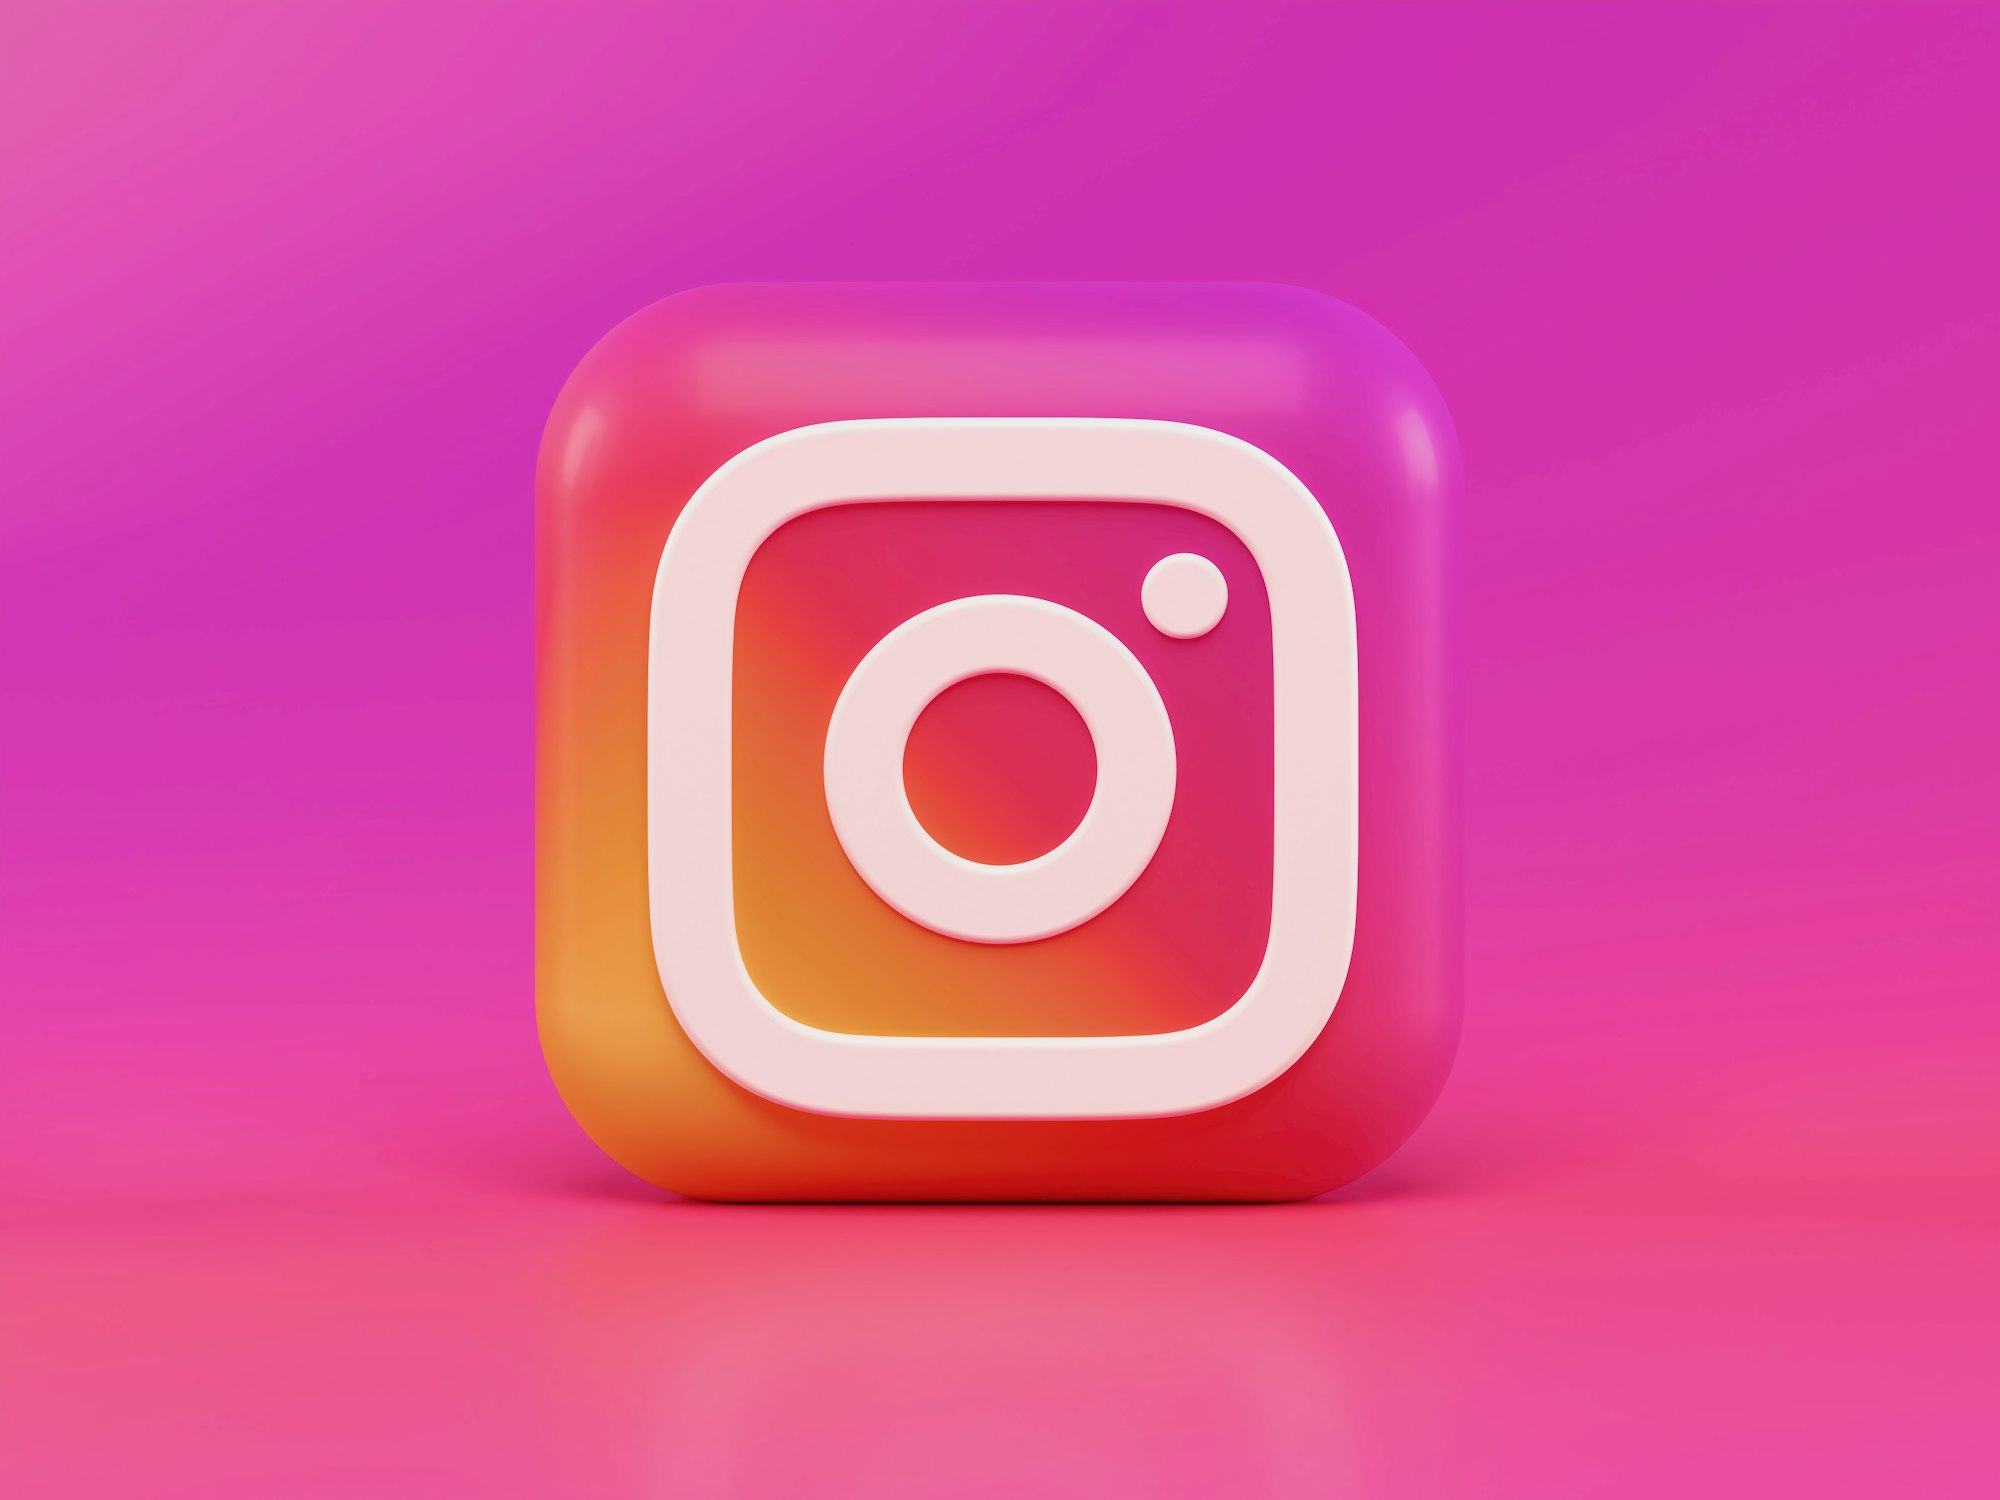 Instagram social media